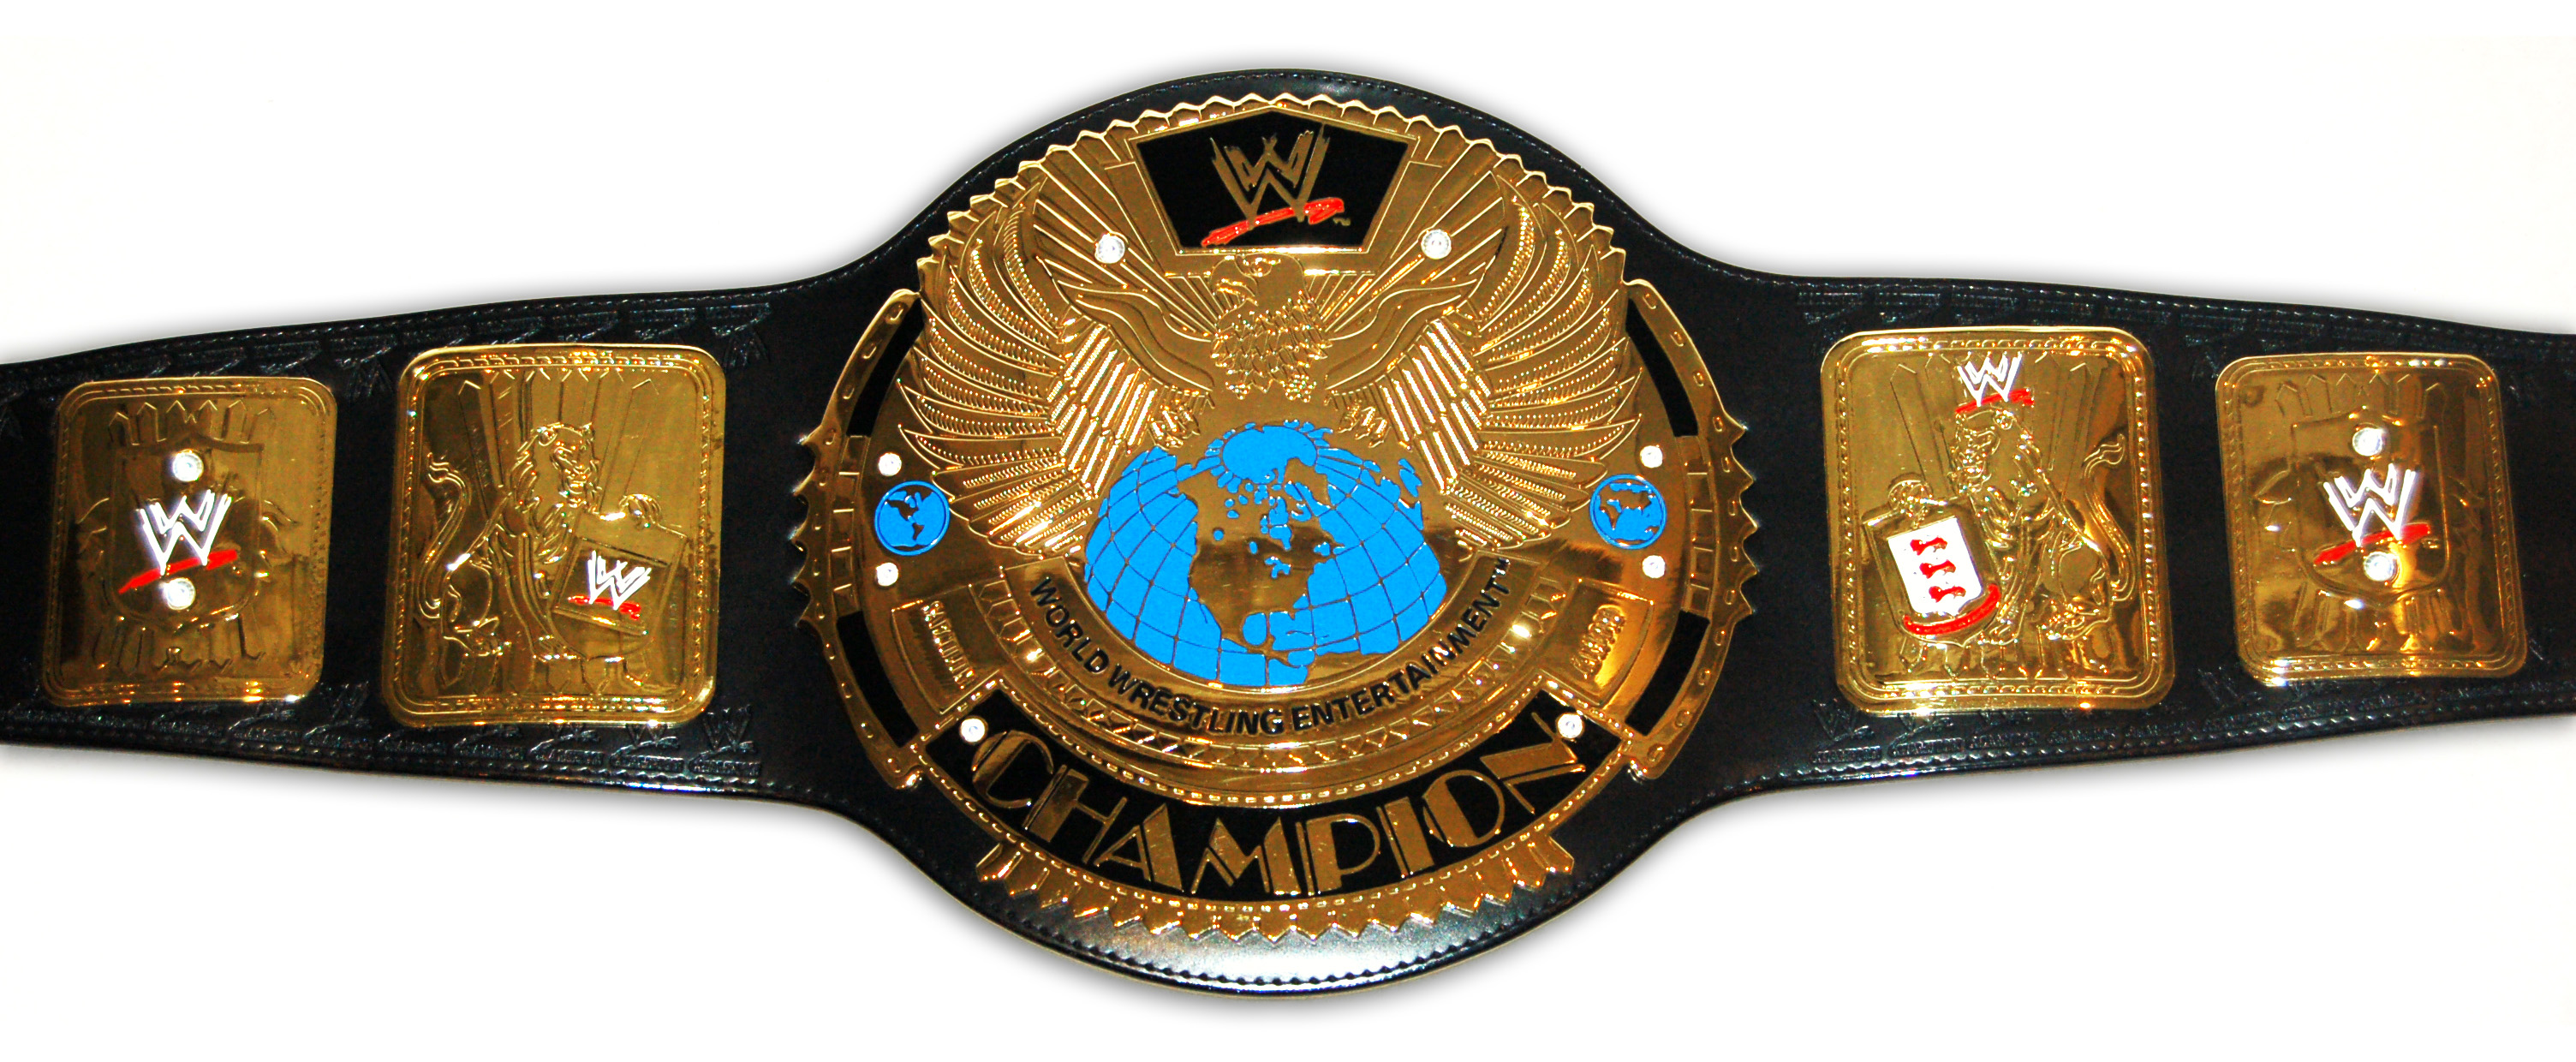 Wwe Attitude Era Championship Belt